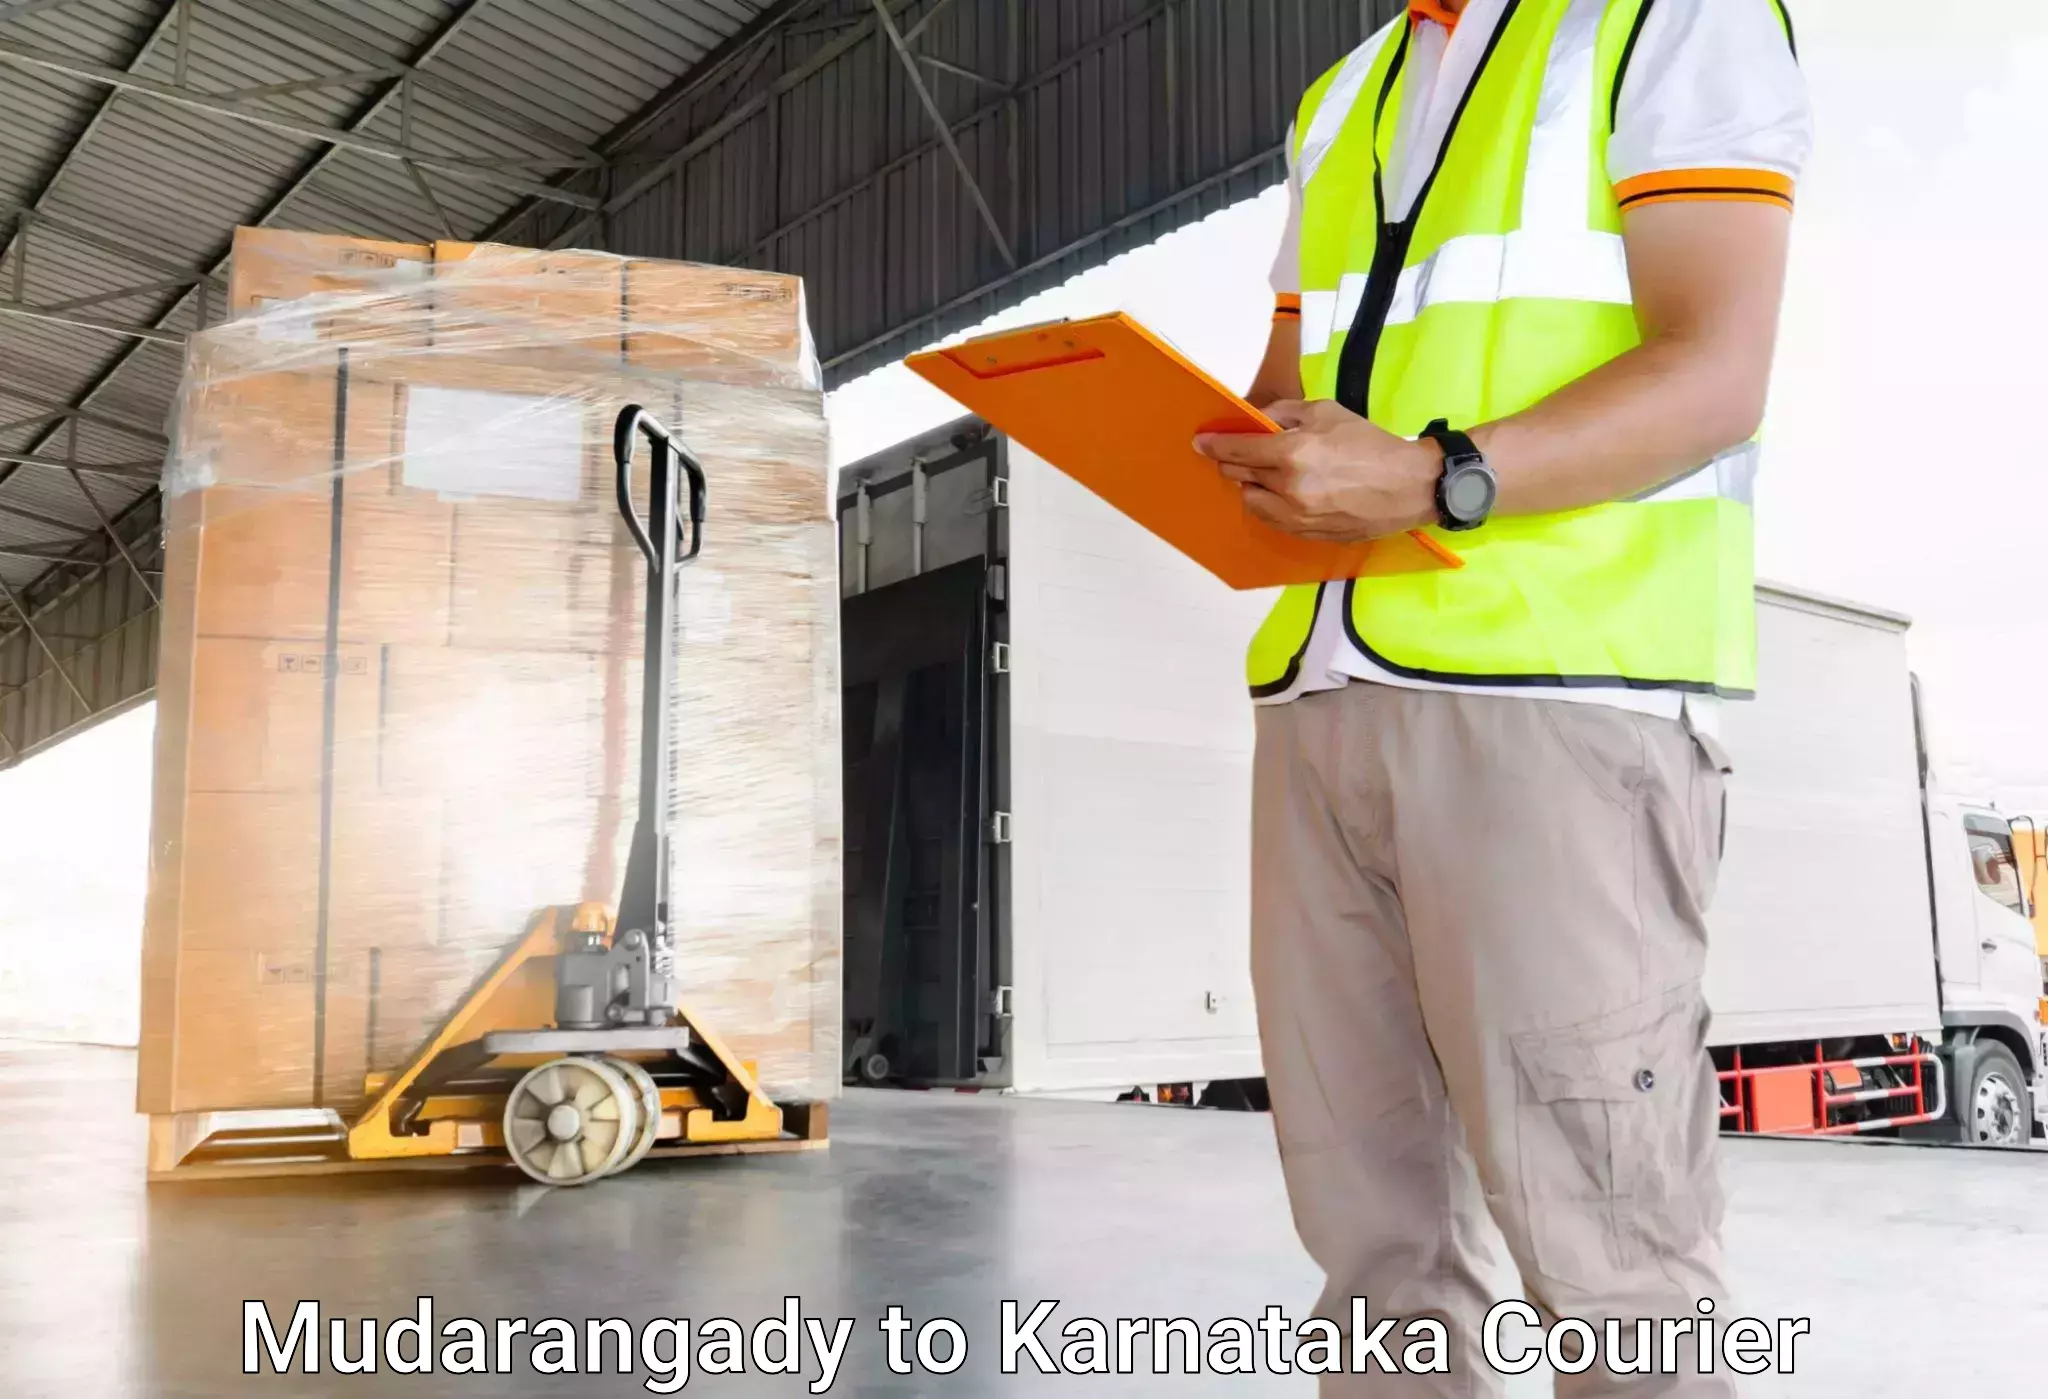 Baggage shipping schedule Mudarangady to Mudigere